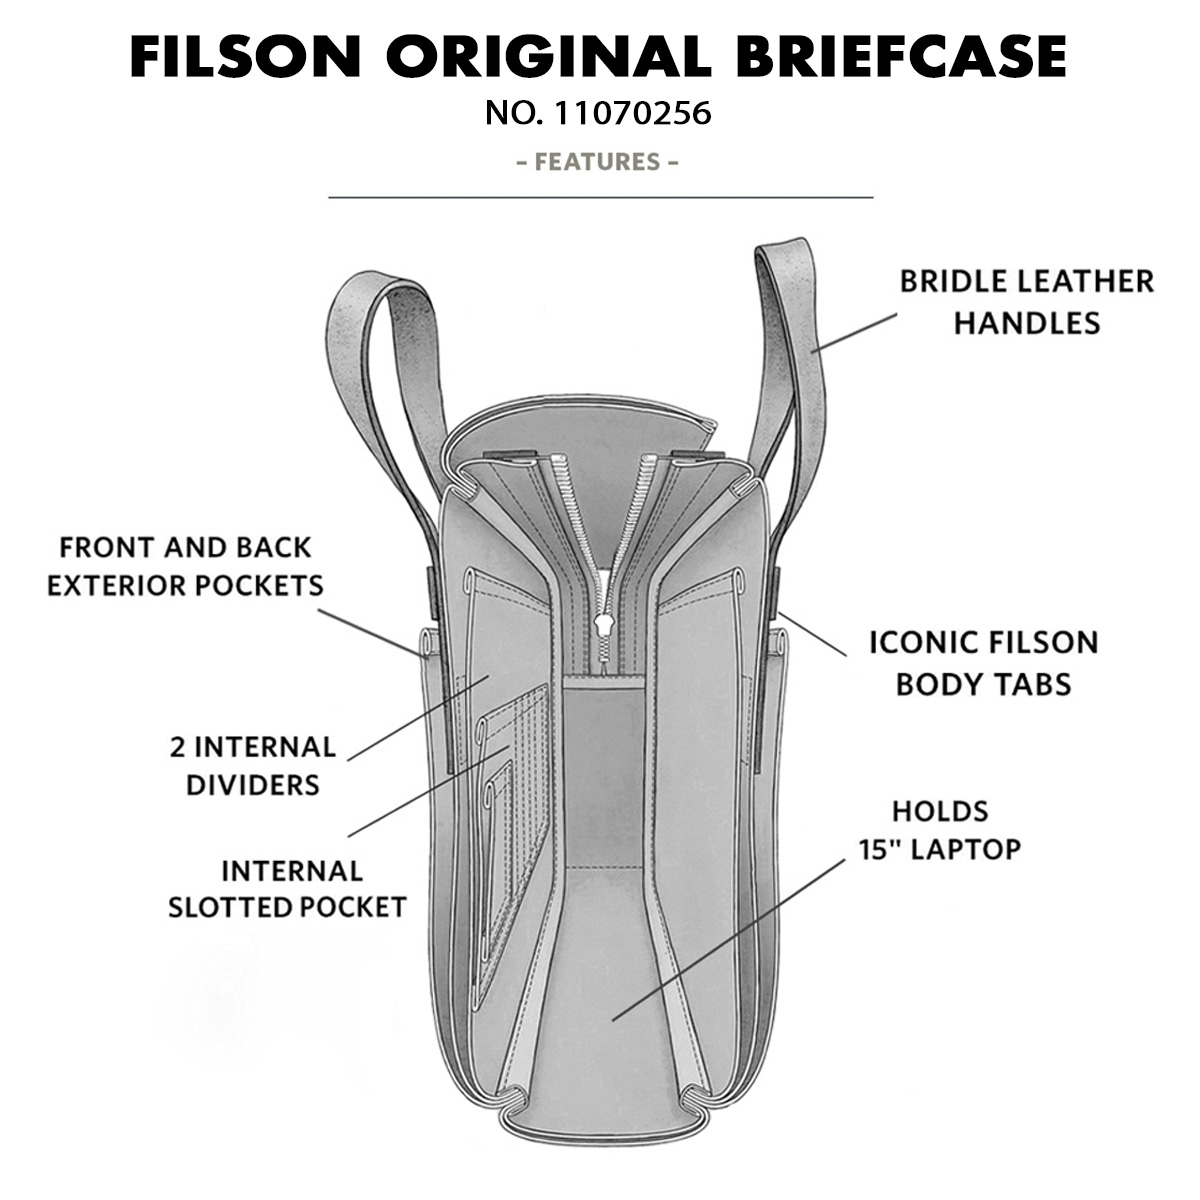 Filson Original Briefcase 11070256 Chessie Tan, features